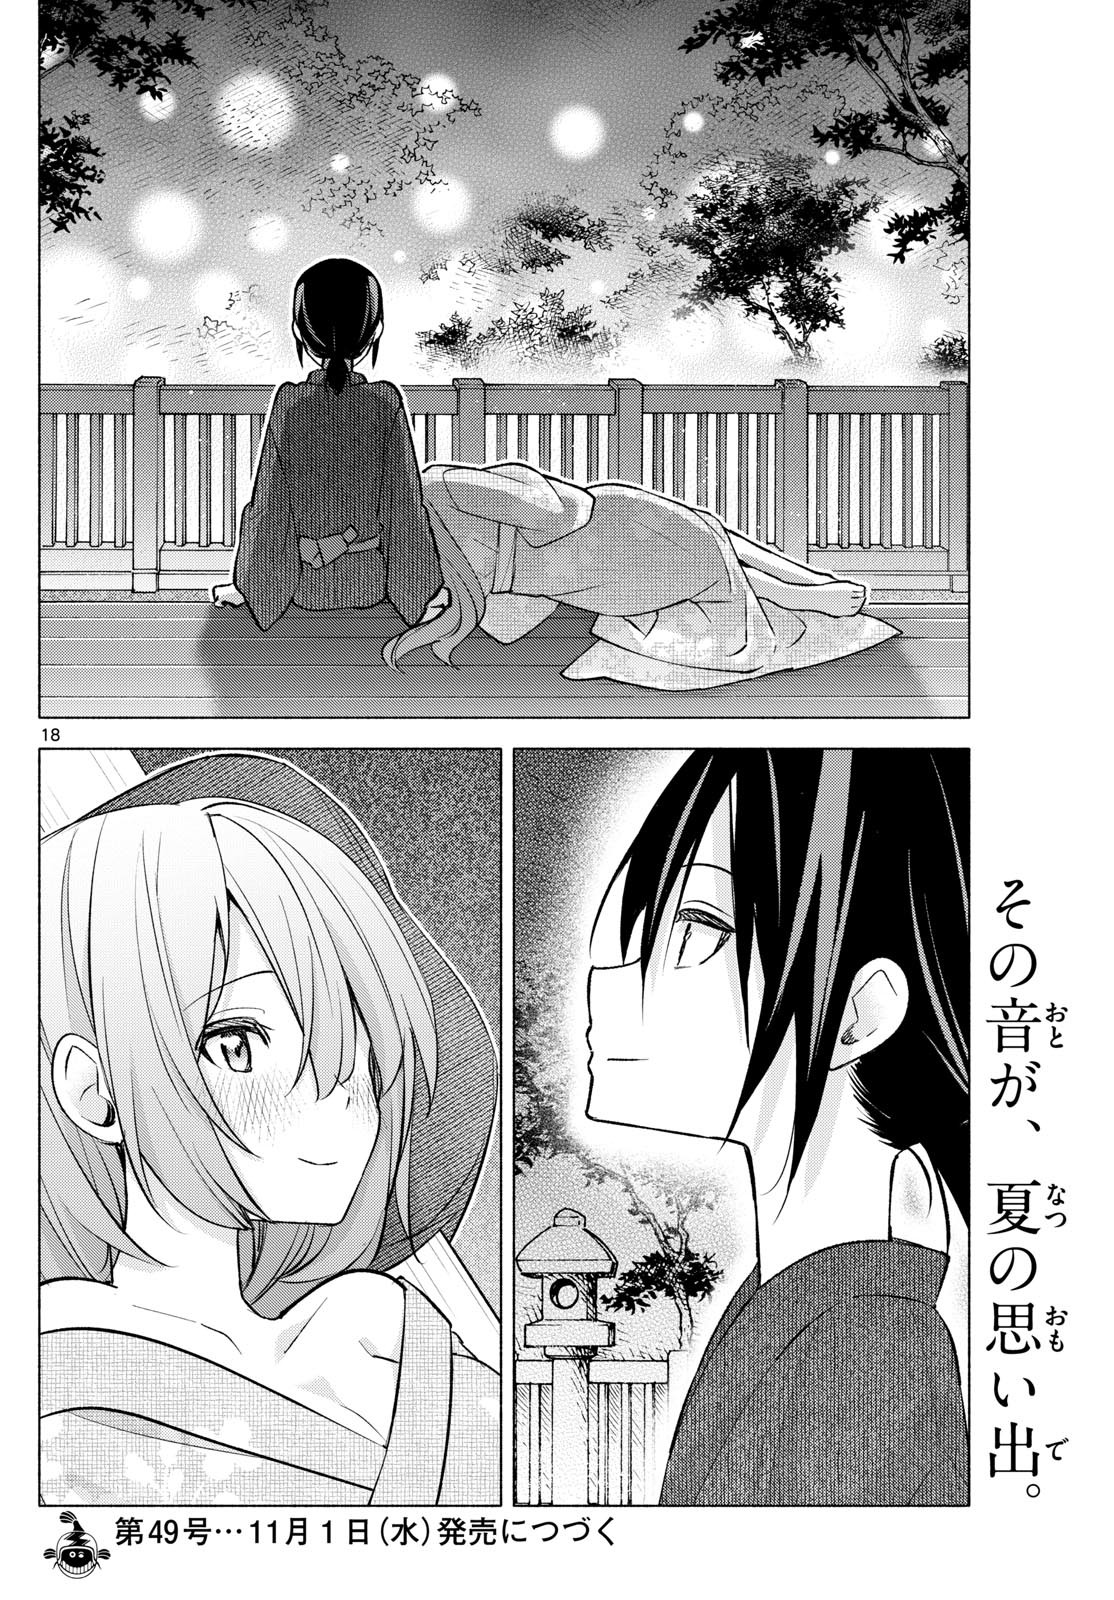 Kimi to Warui Koto ga Shitai - Chapter 049 - Page 18